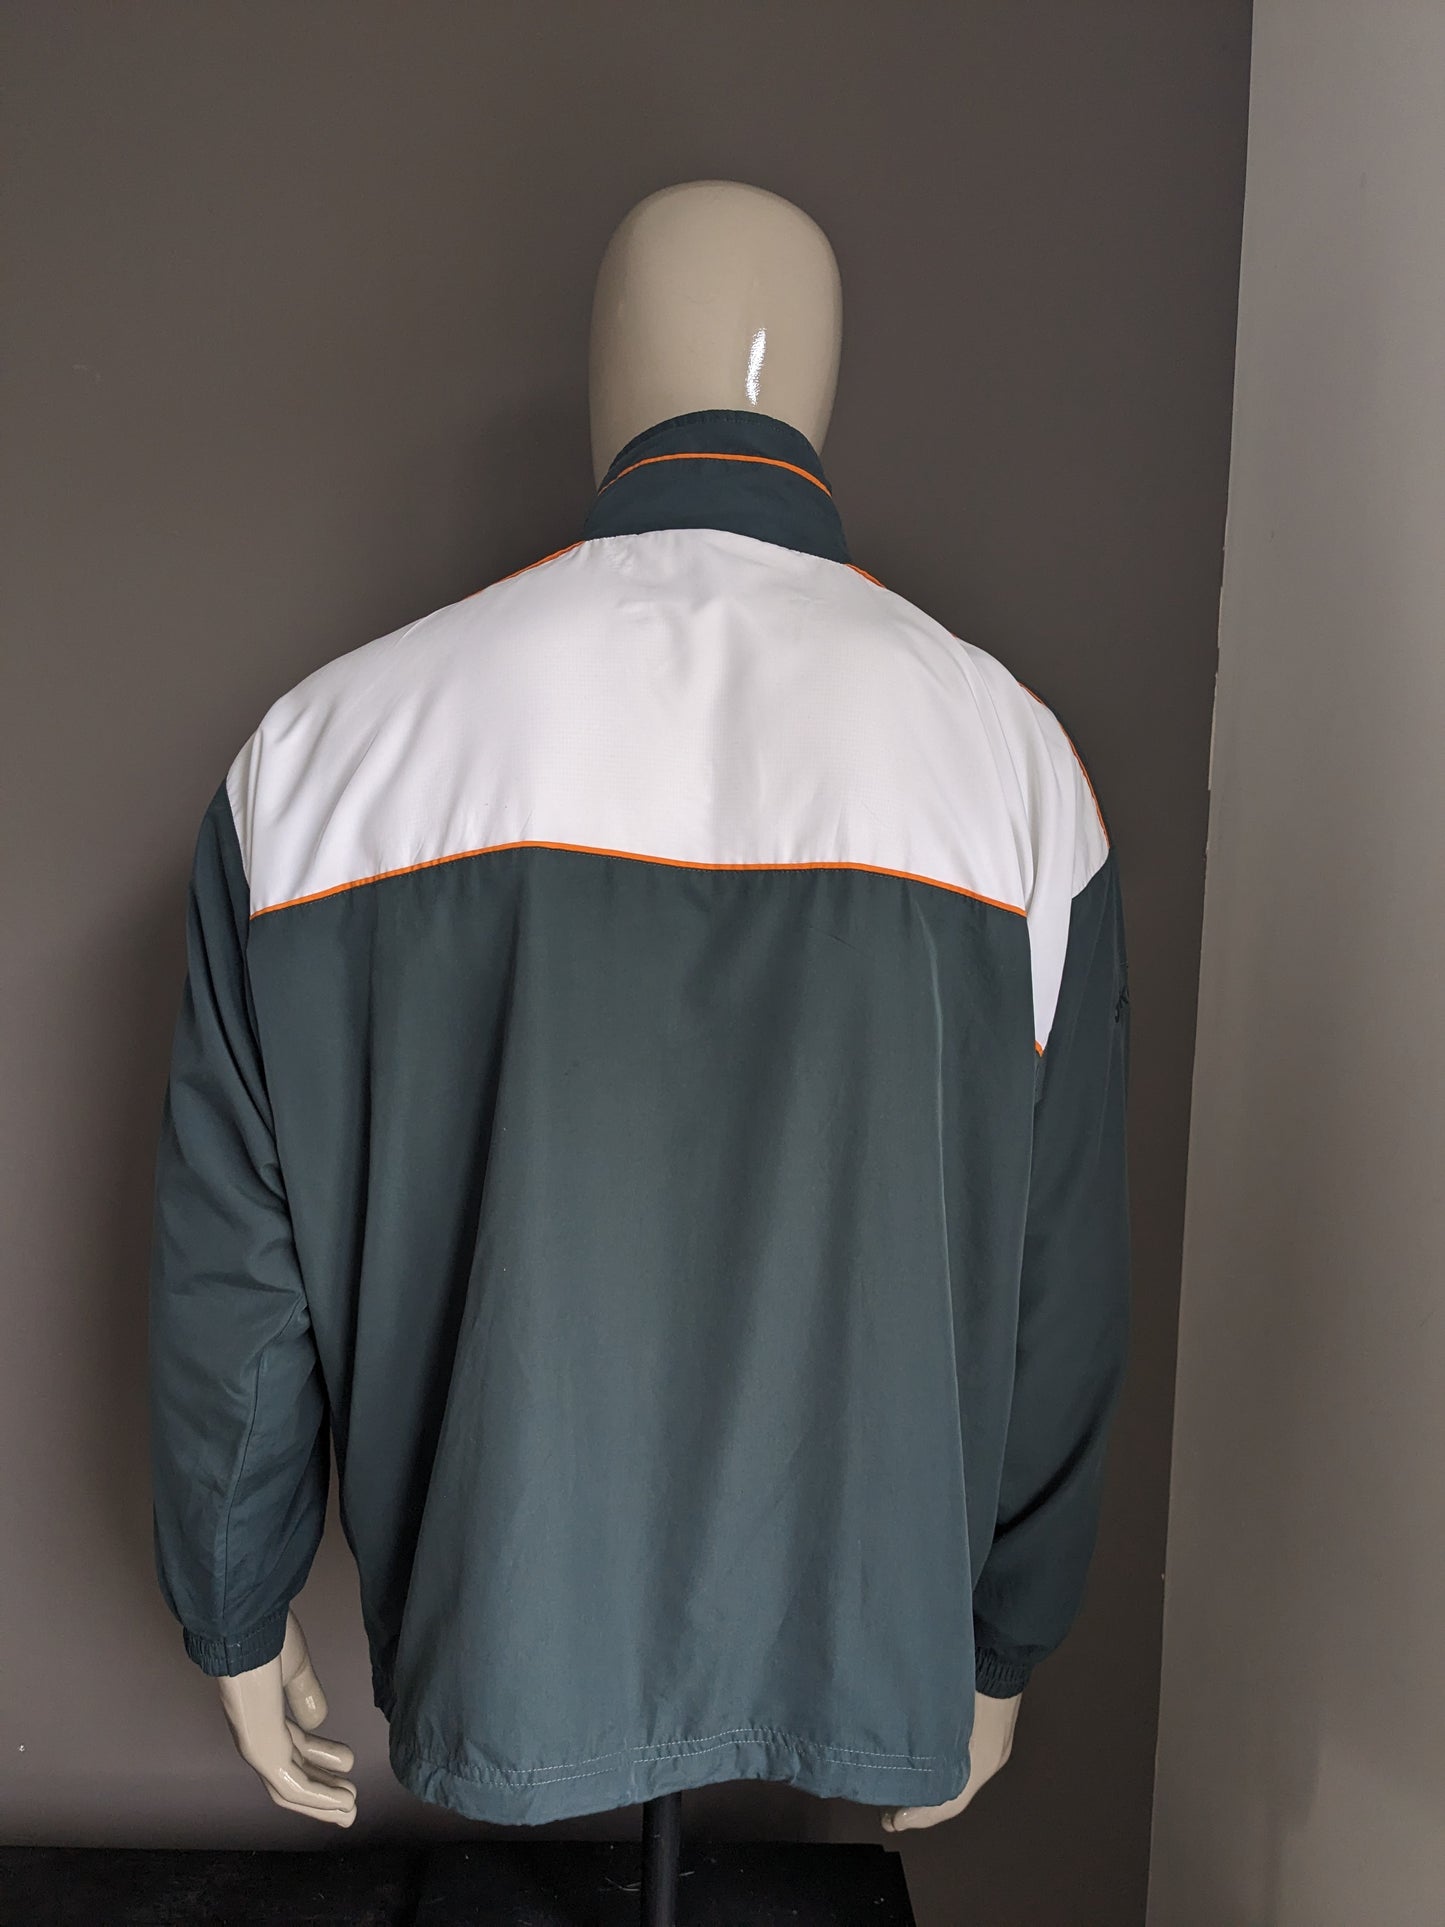 Jako Sport Jako Sport des années 80-90. Couleur blanc orange vert. Taille 2xl / xxl.